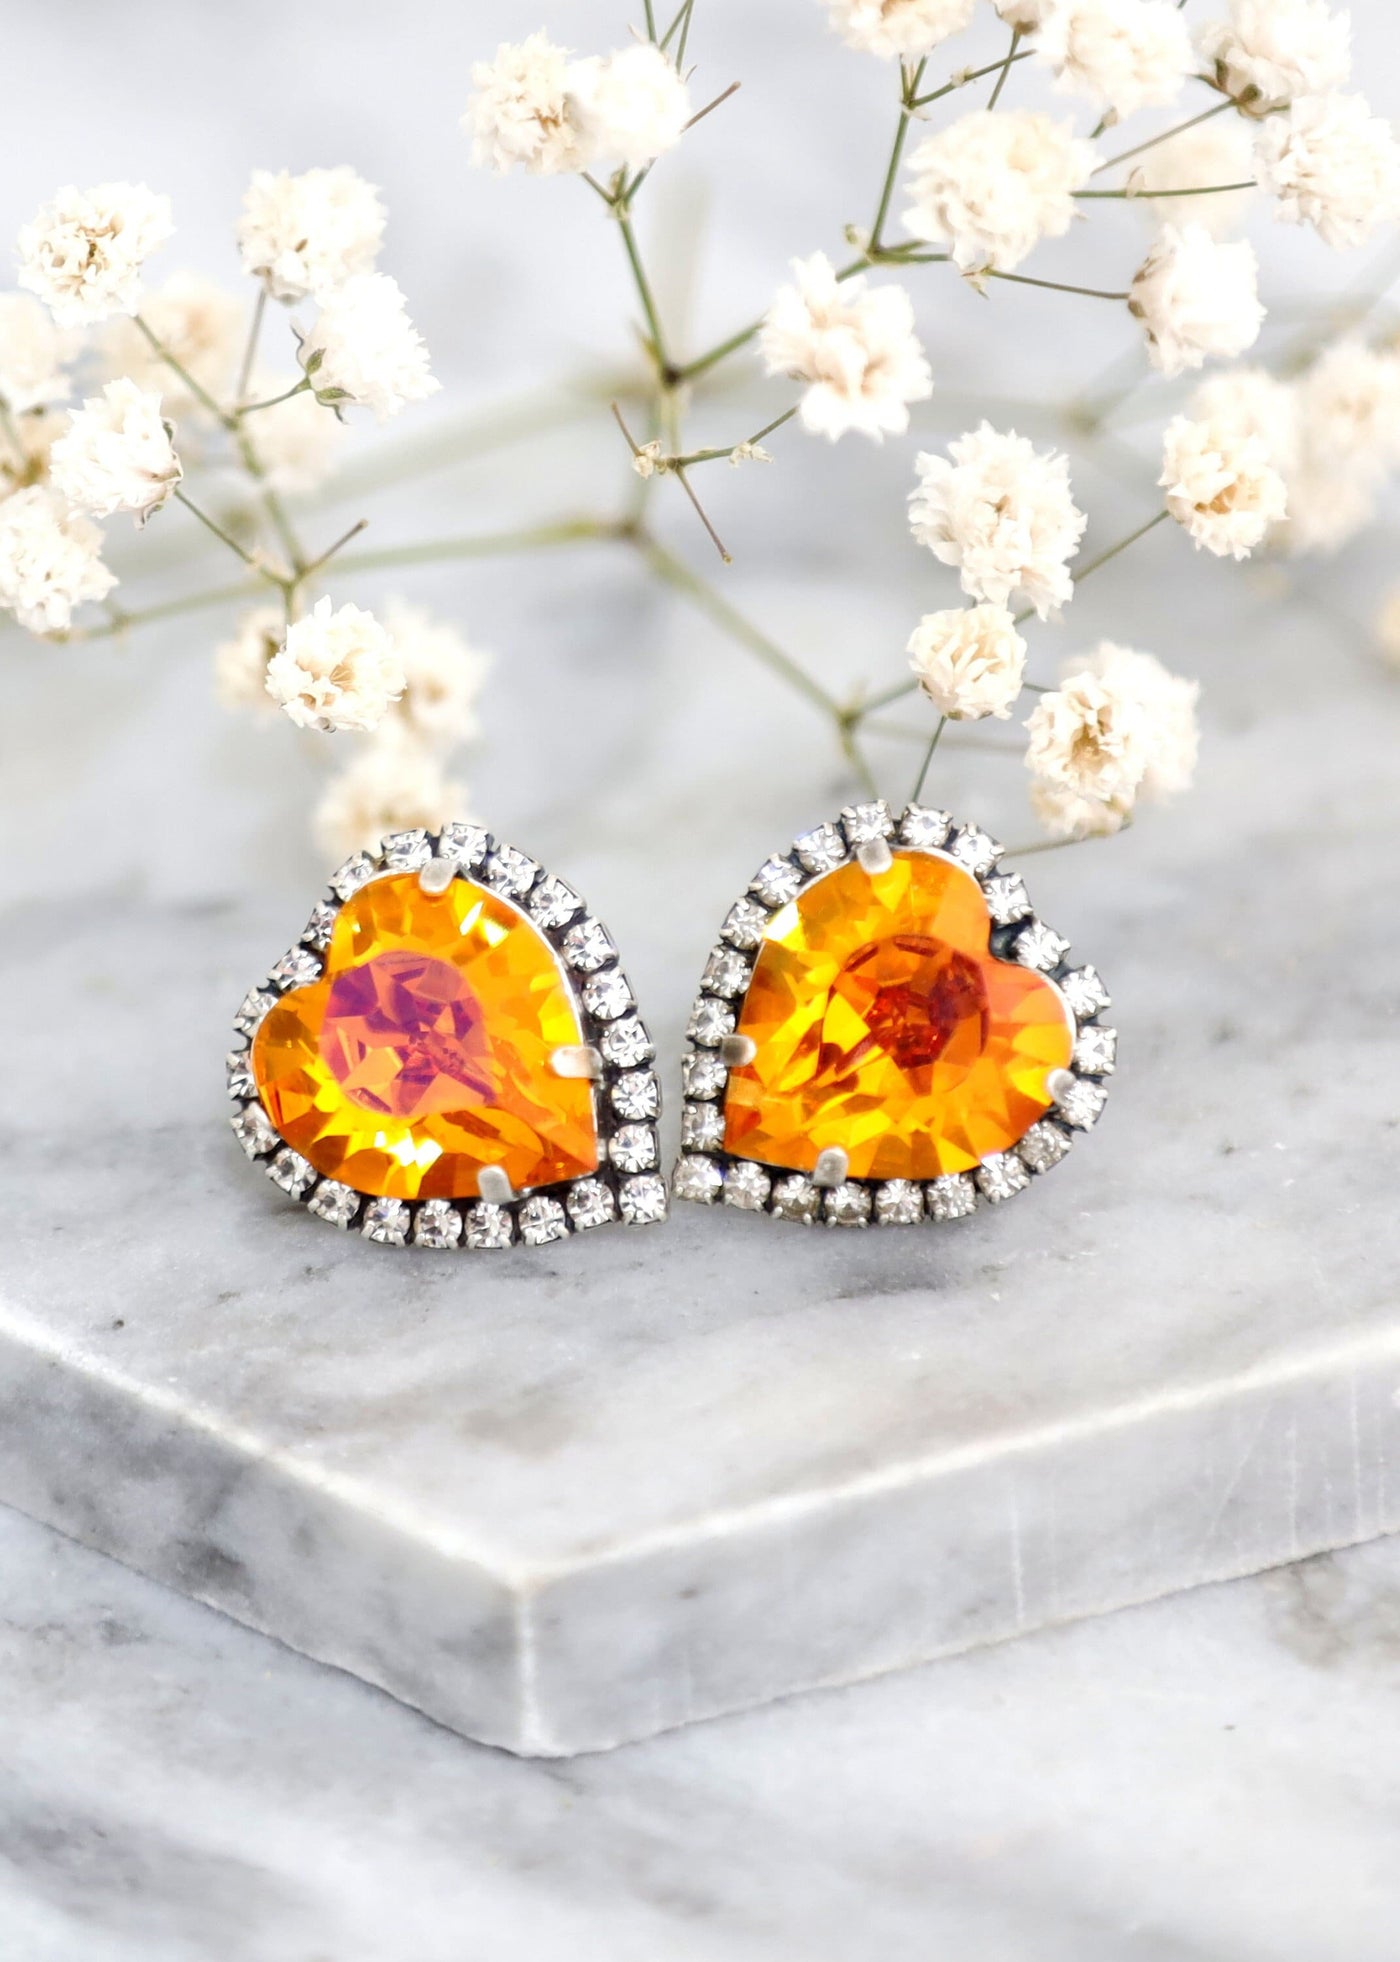 Heart Stud Earrings, Orange Crystal Heart Earrings, Orange Crystal Stud Earrings, Valentines Gift For Her, Hot Orange Statement Earrings